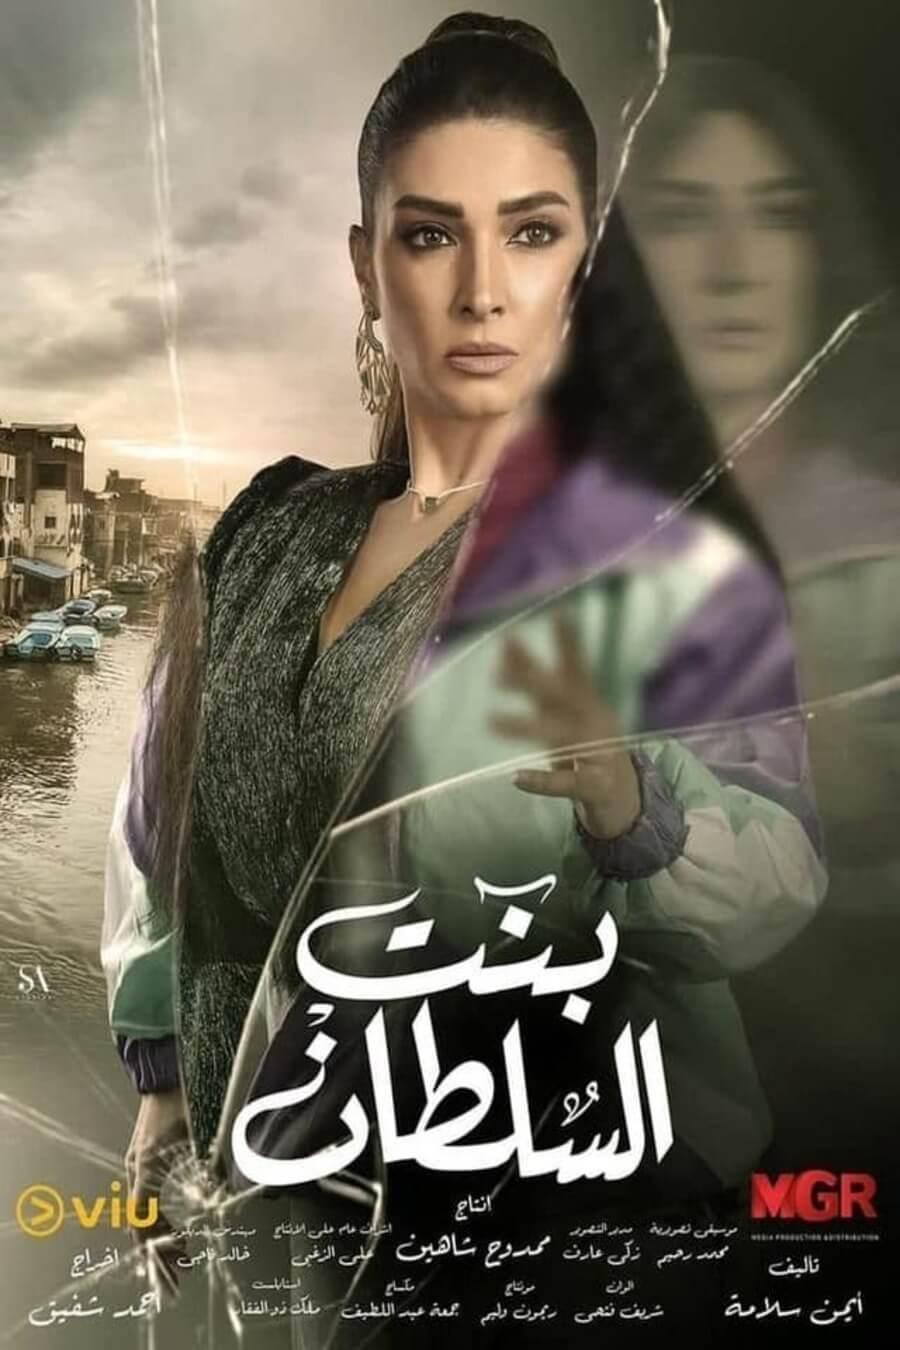 TV ratings for Bint El Sultan (بنت السلطان) in Spain. viu TV series